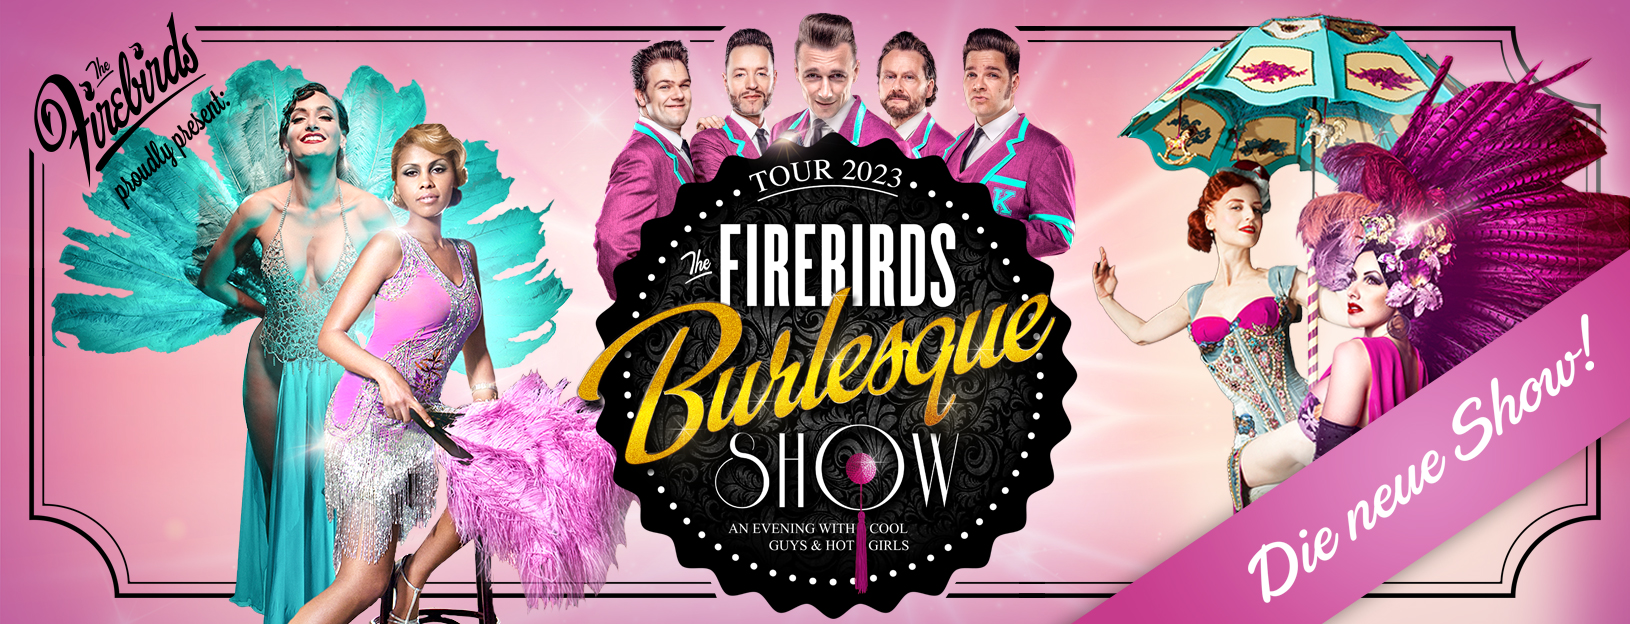 The Firebirds Burlesque Show